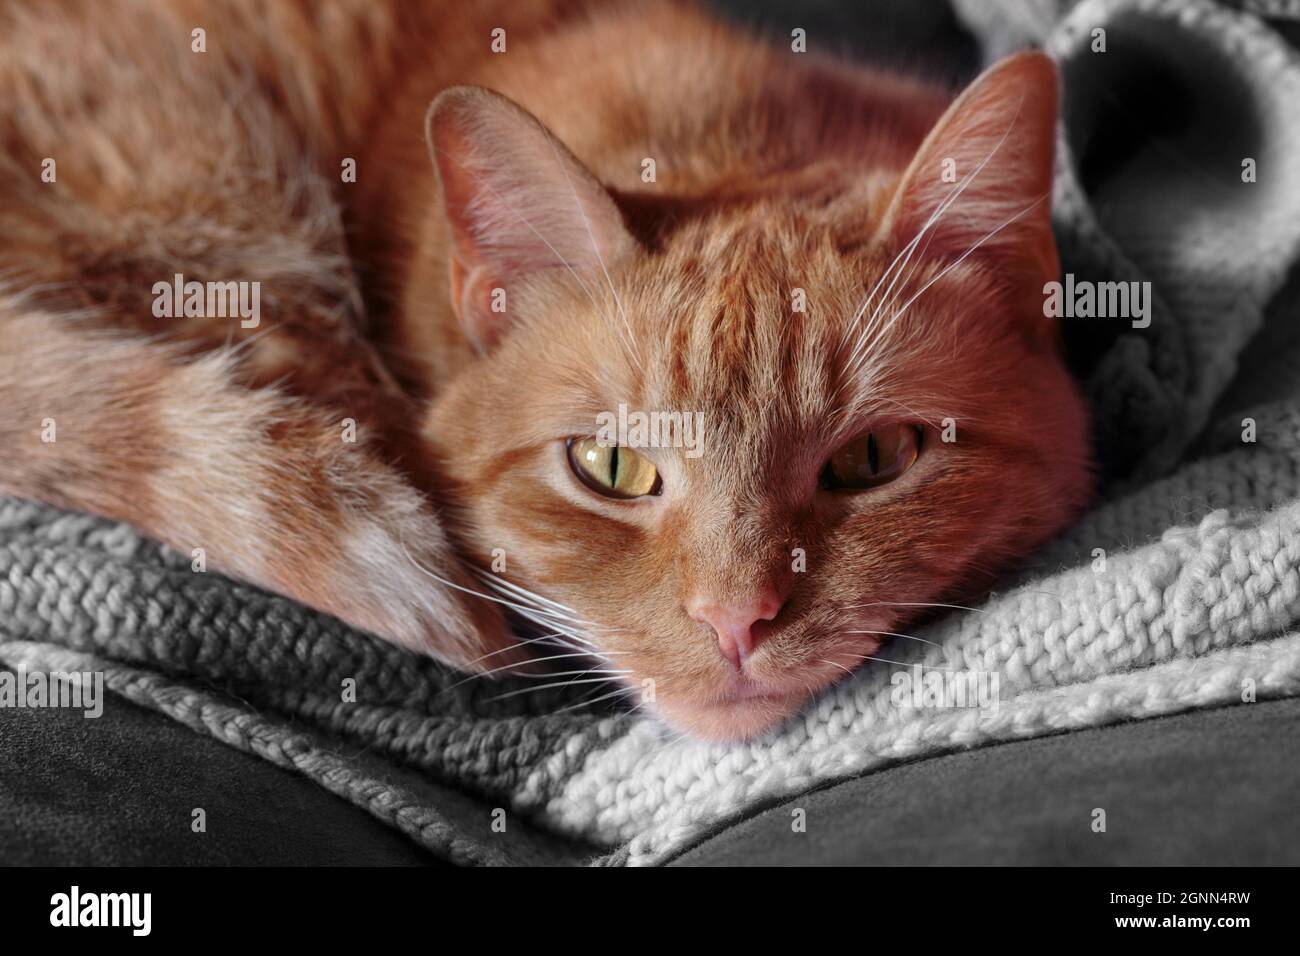 Nahaufnahme einer orangefarbenen gestromten Katze mit kupferfarbenen Augen, die auf einer Decke zusammengerollt sind und die Kamera anstarren Stockfoto